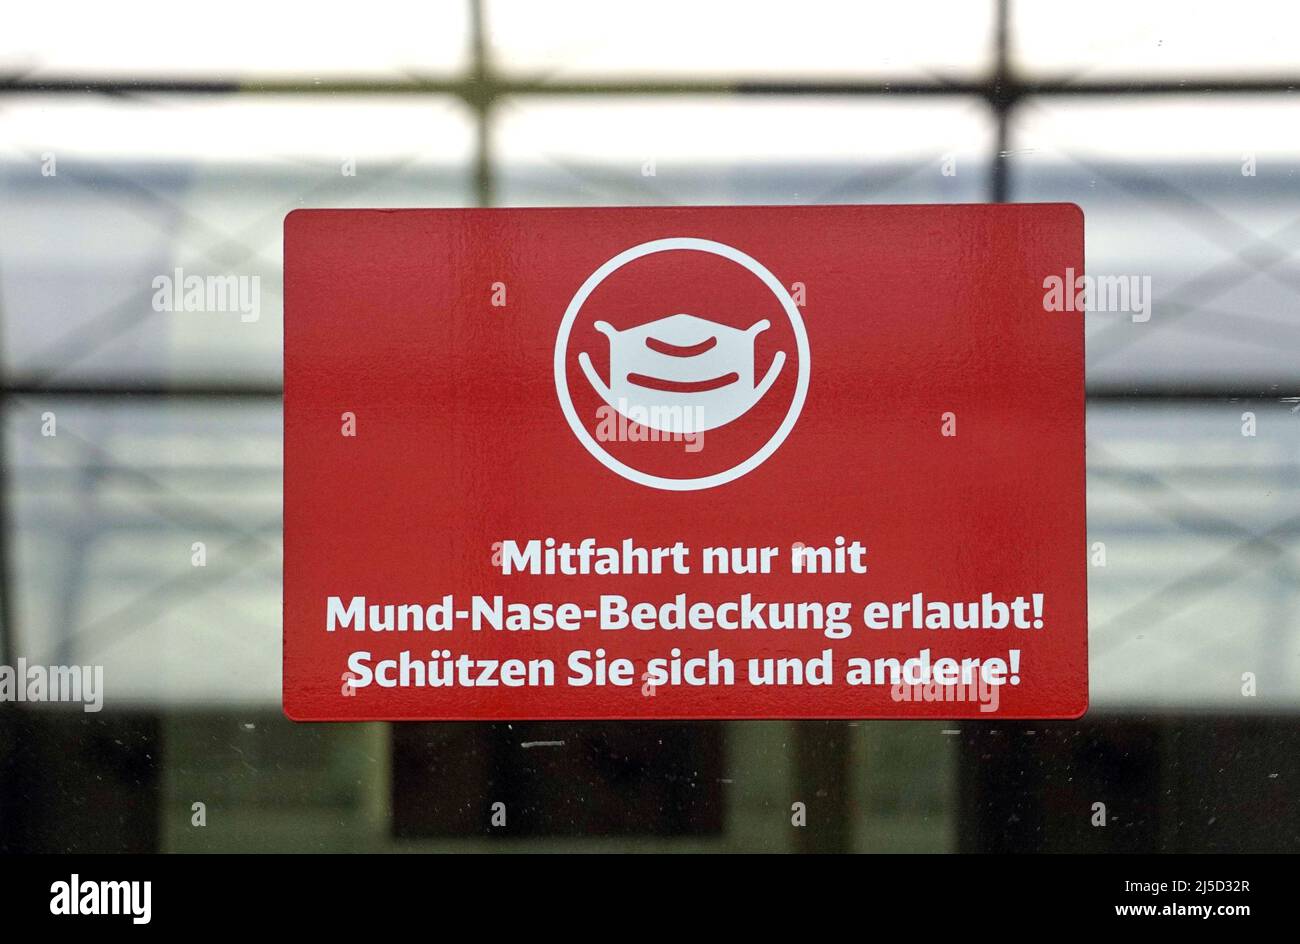 'Berlin, 21.09.2021 - ICE train with notice ''''Mitfahrt nur mit Mund-Nase-Bedeckung erlaubt ''. [automated translation]' Stock Photo